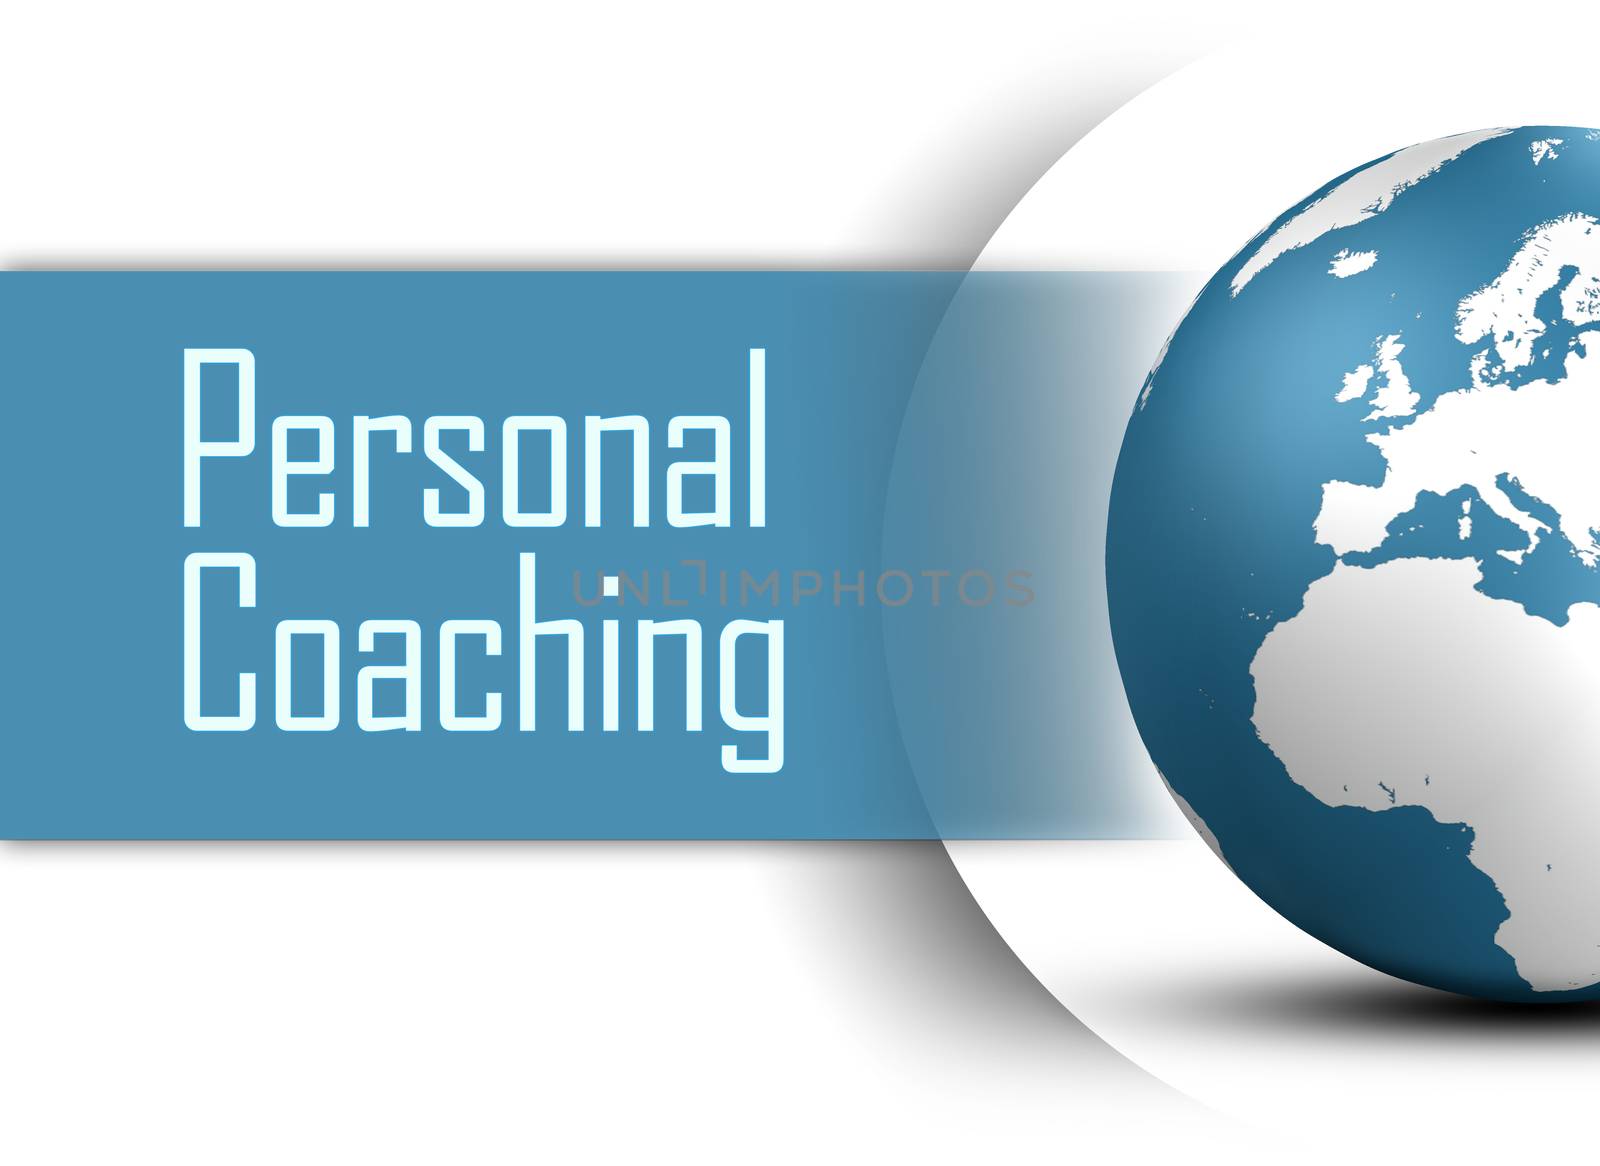 Personal Coaching by Mazirama